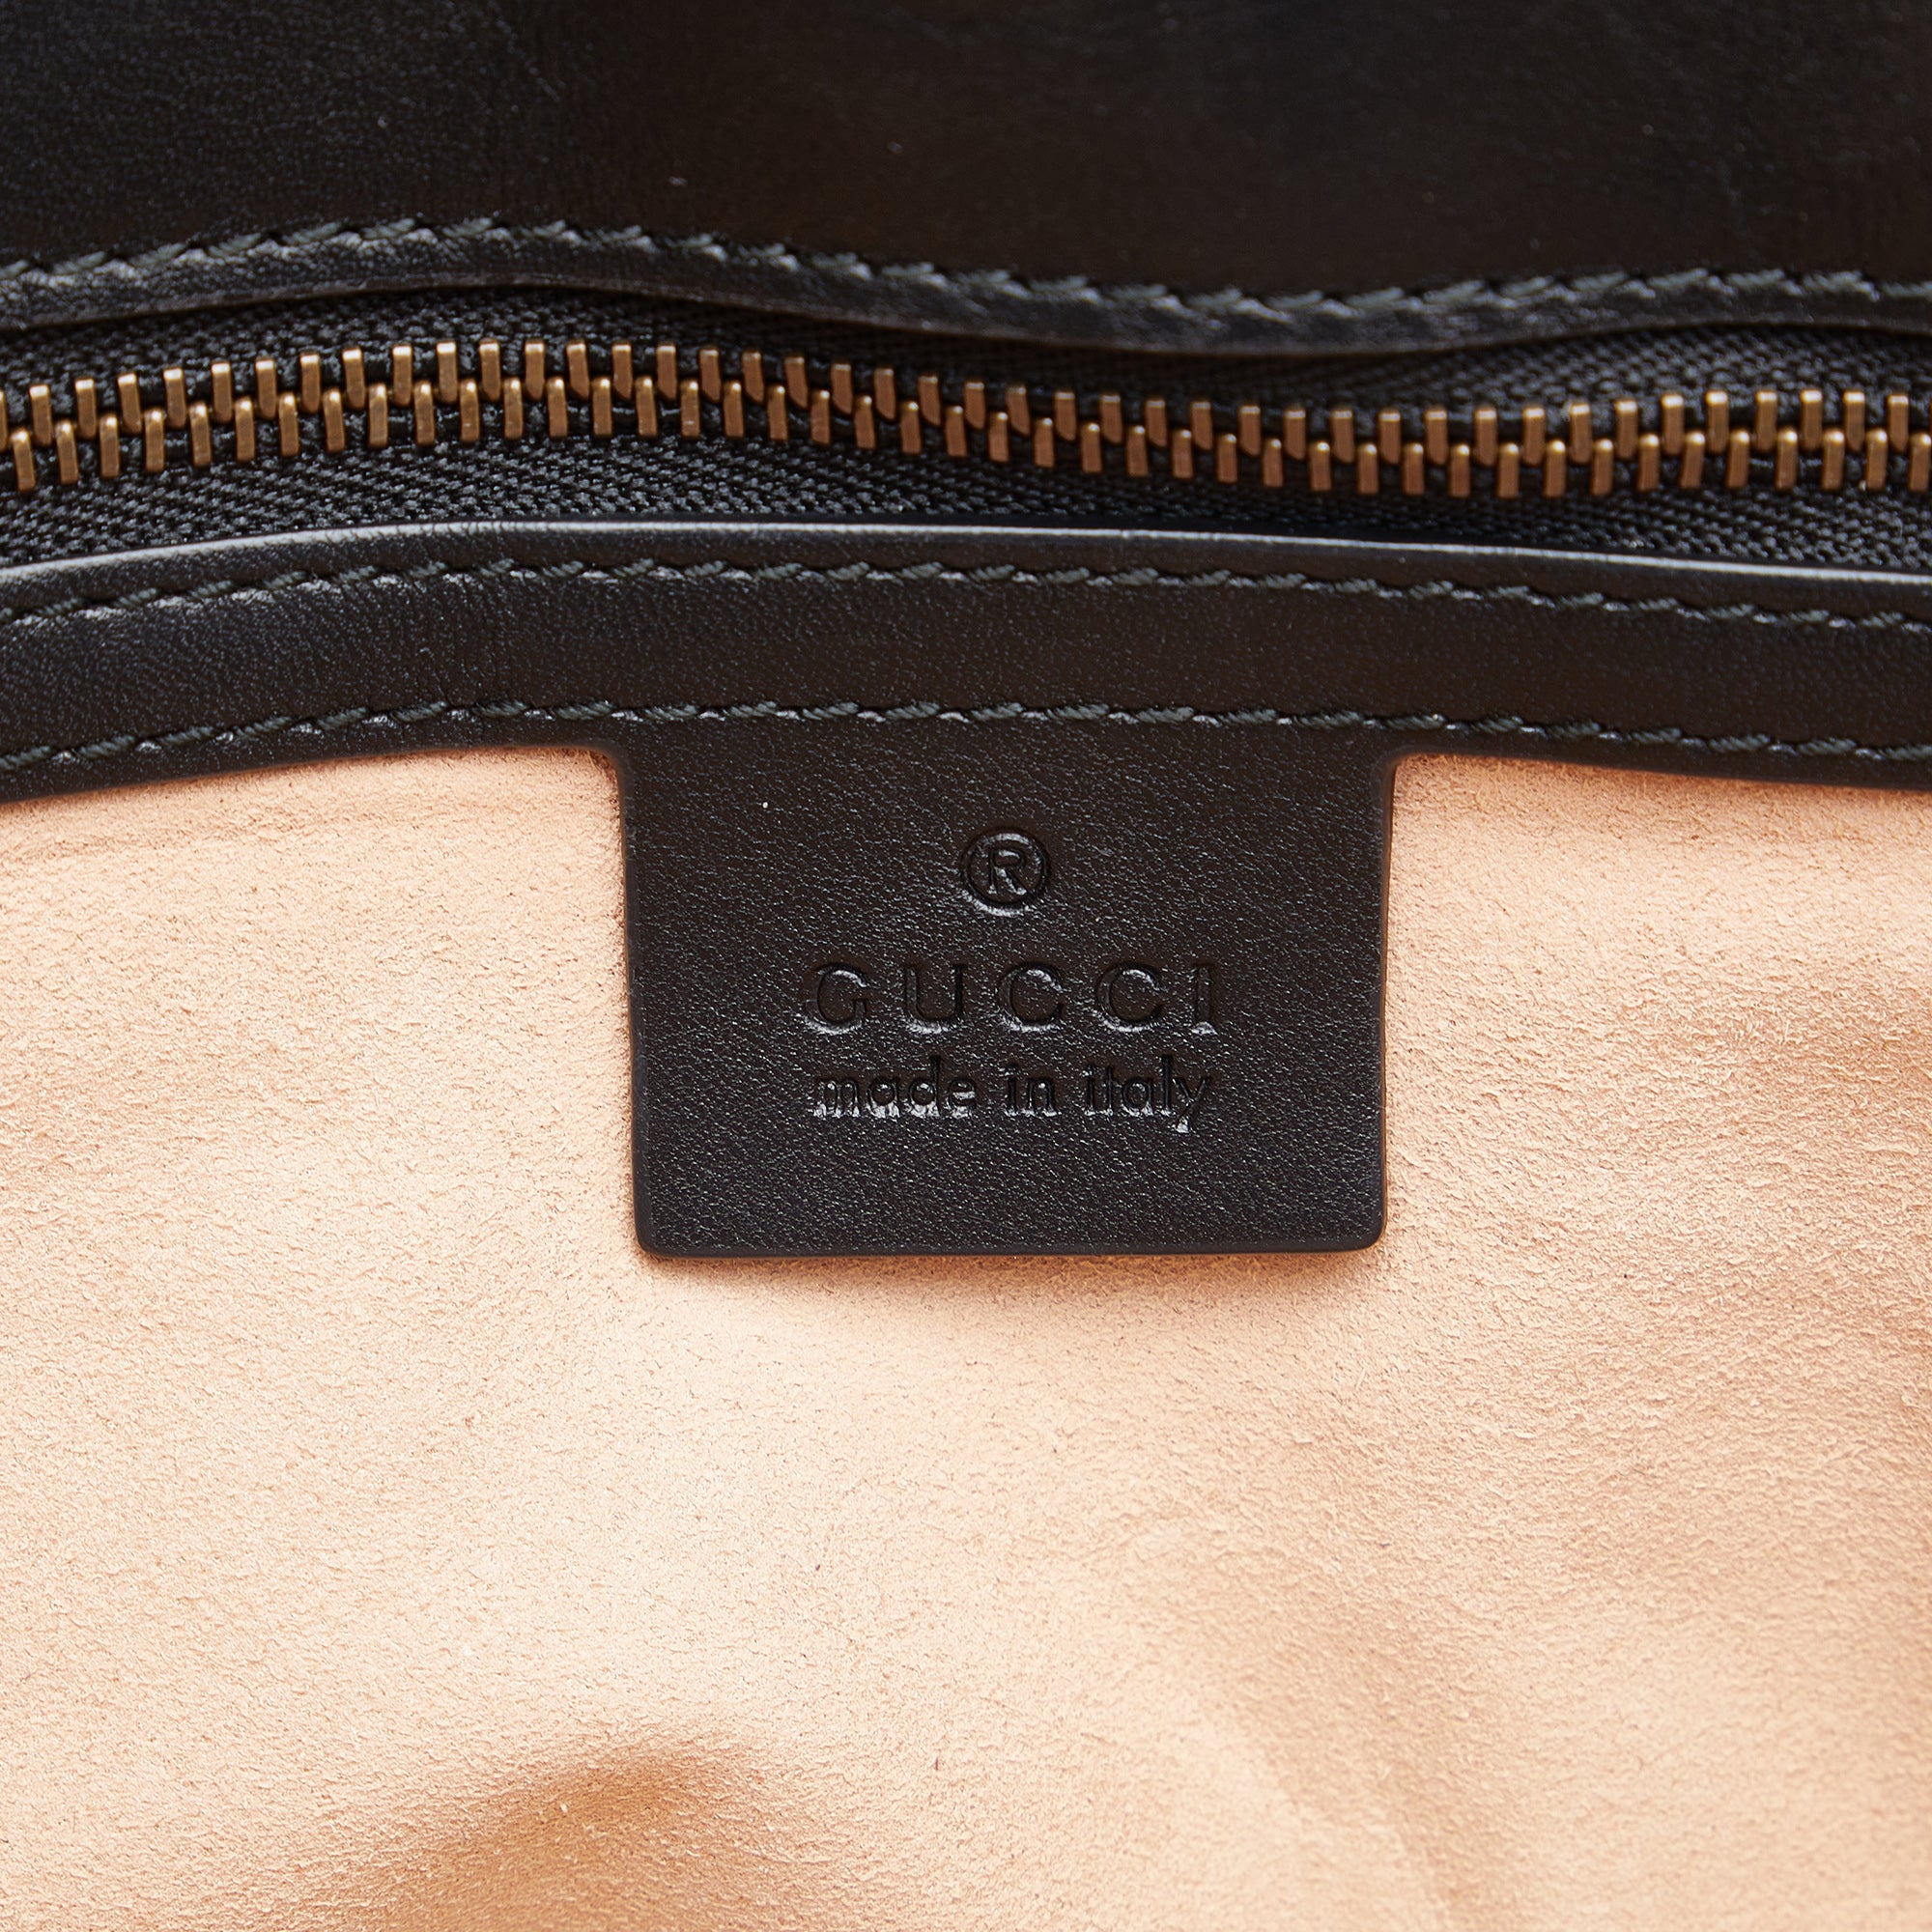 Gucci  Shoulder Bag Black GG Marmont Matelasse Leather